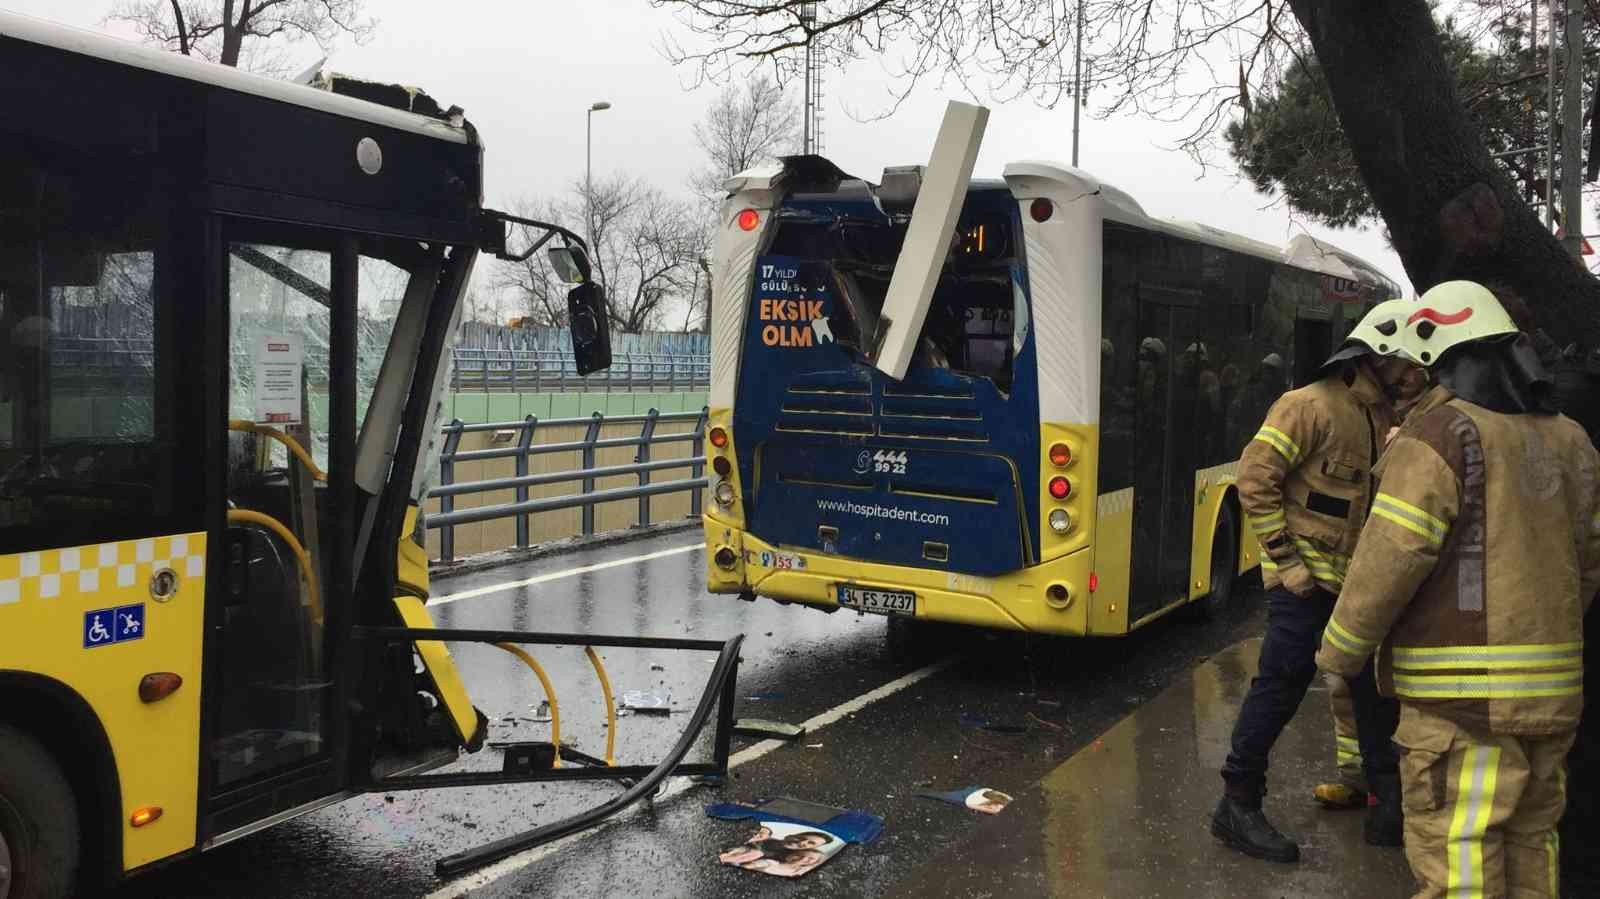 Sarıyer’de İETT otobüsleri çarpıştı: 4 yaralı #istanbul